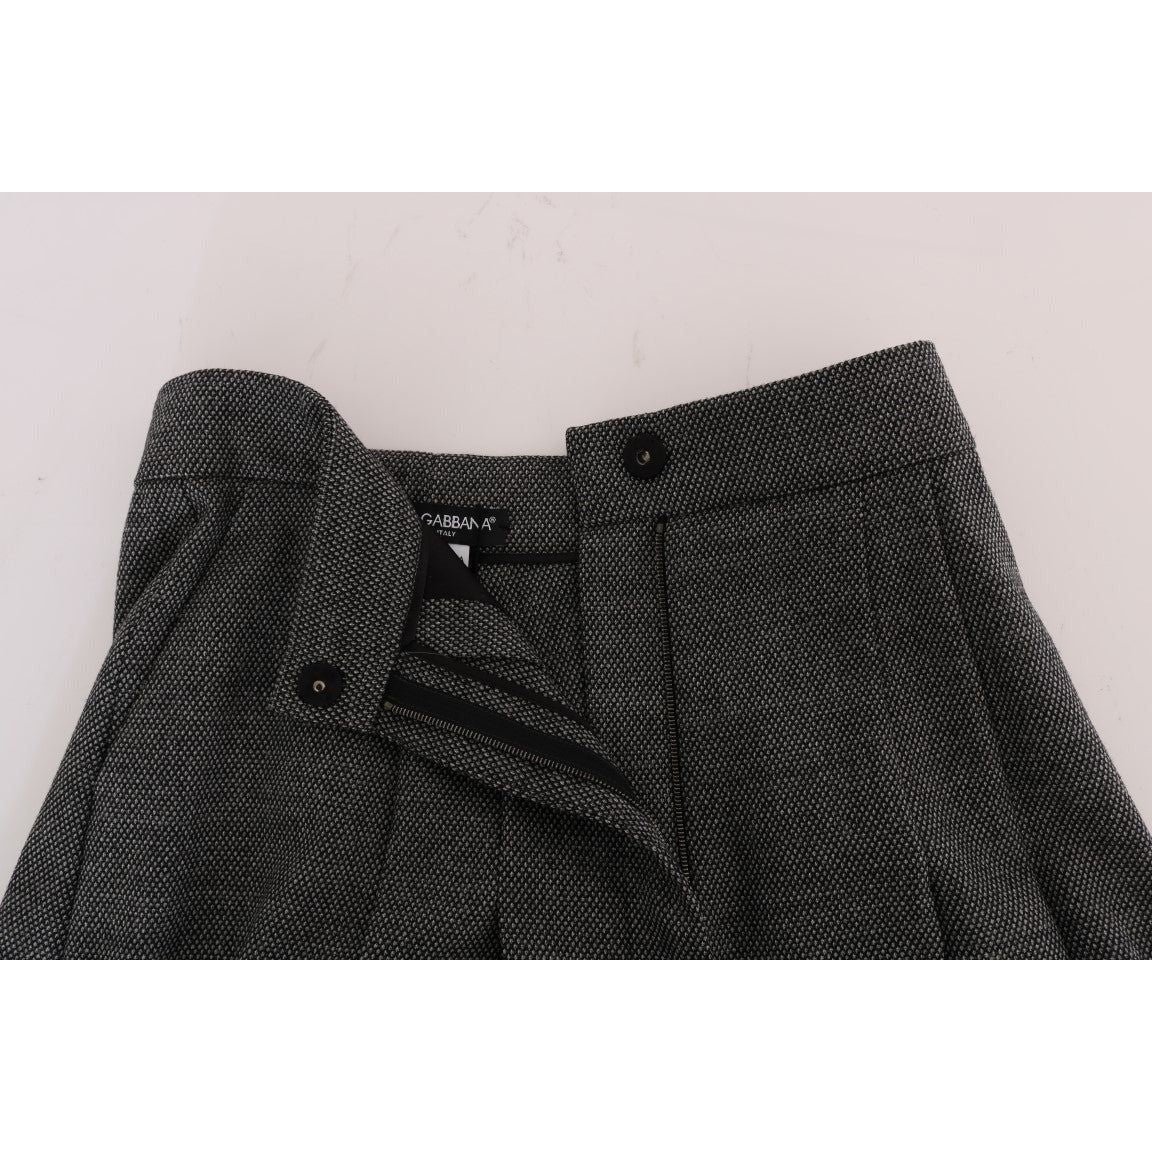 Dolce & Gabbana Chic High Waist Wool Mini Shorts gray-wool-high-waist-mini-shorts